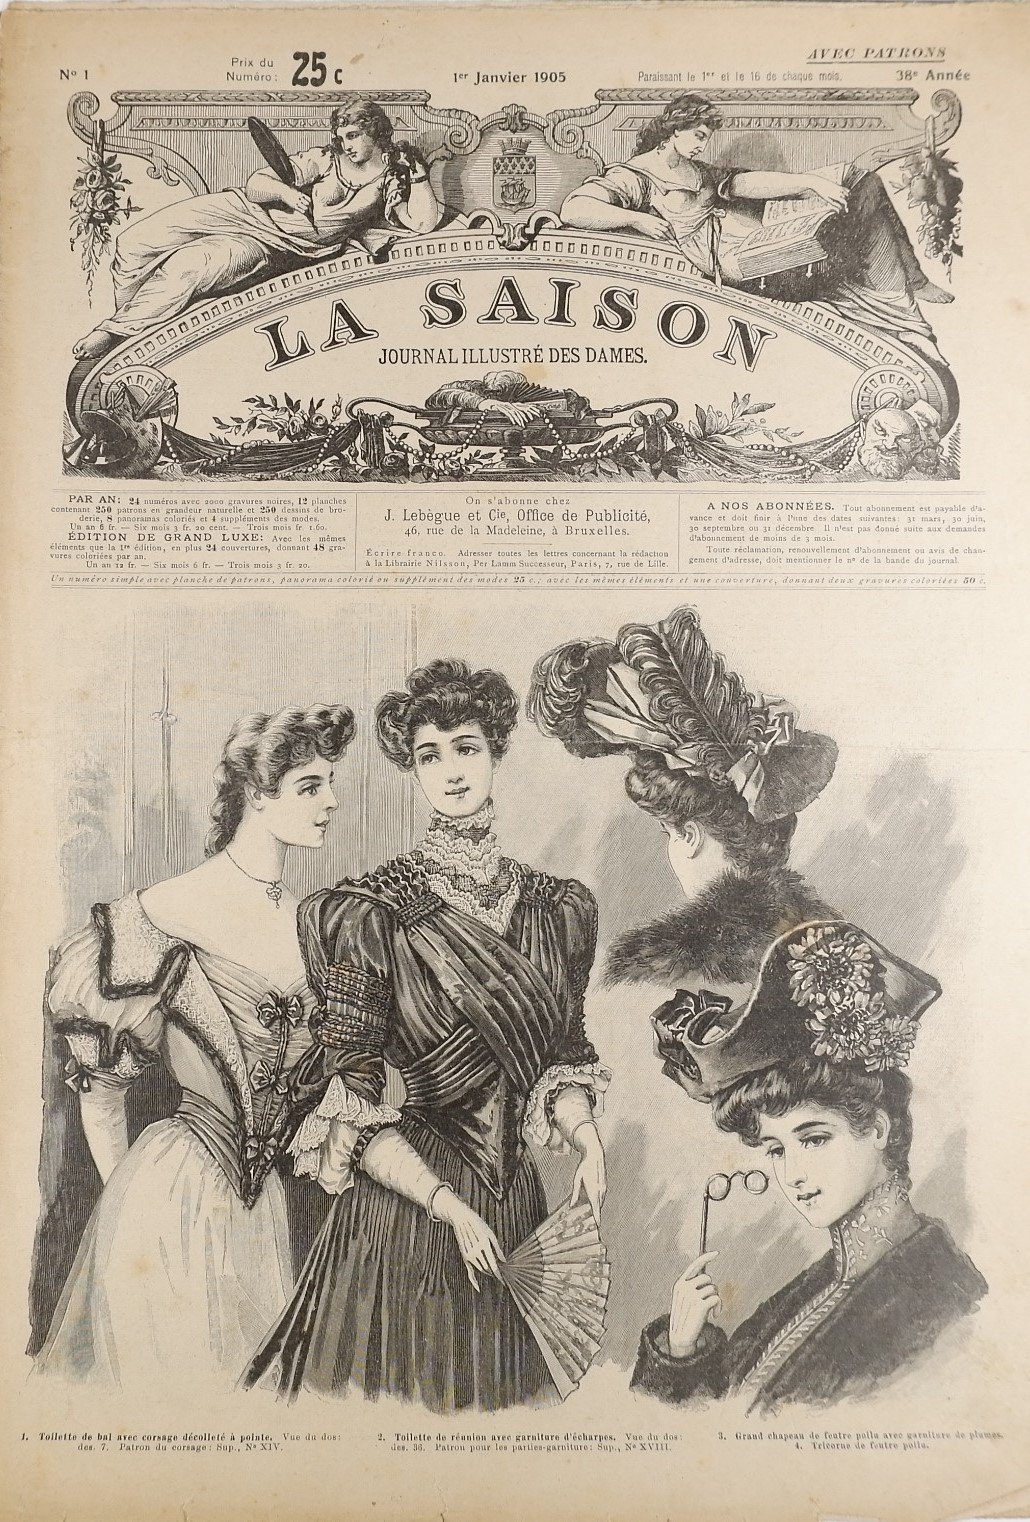 Sammlung: La Saison, Journal illustre`des dames (1905) (Volkskunde- und Freilichtmuseum Roscheider Hof RR-F)